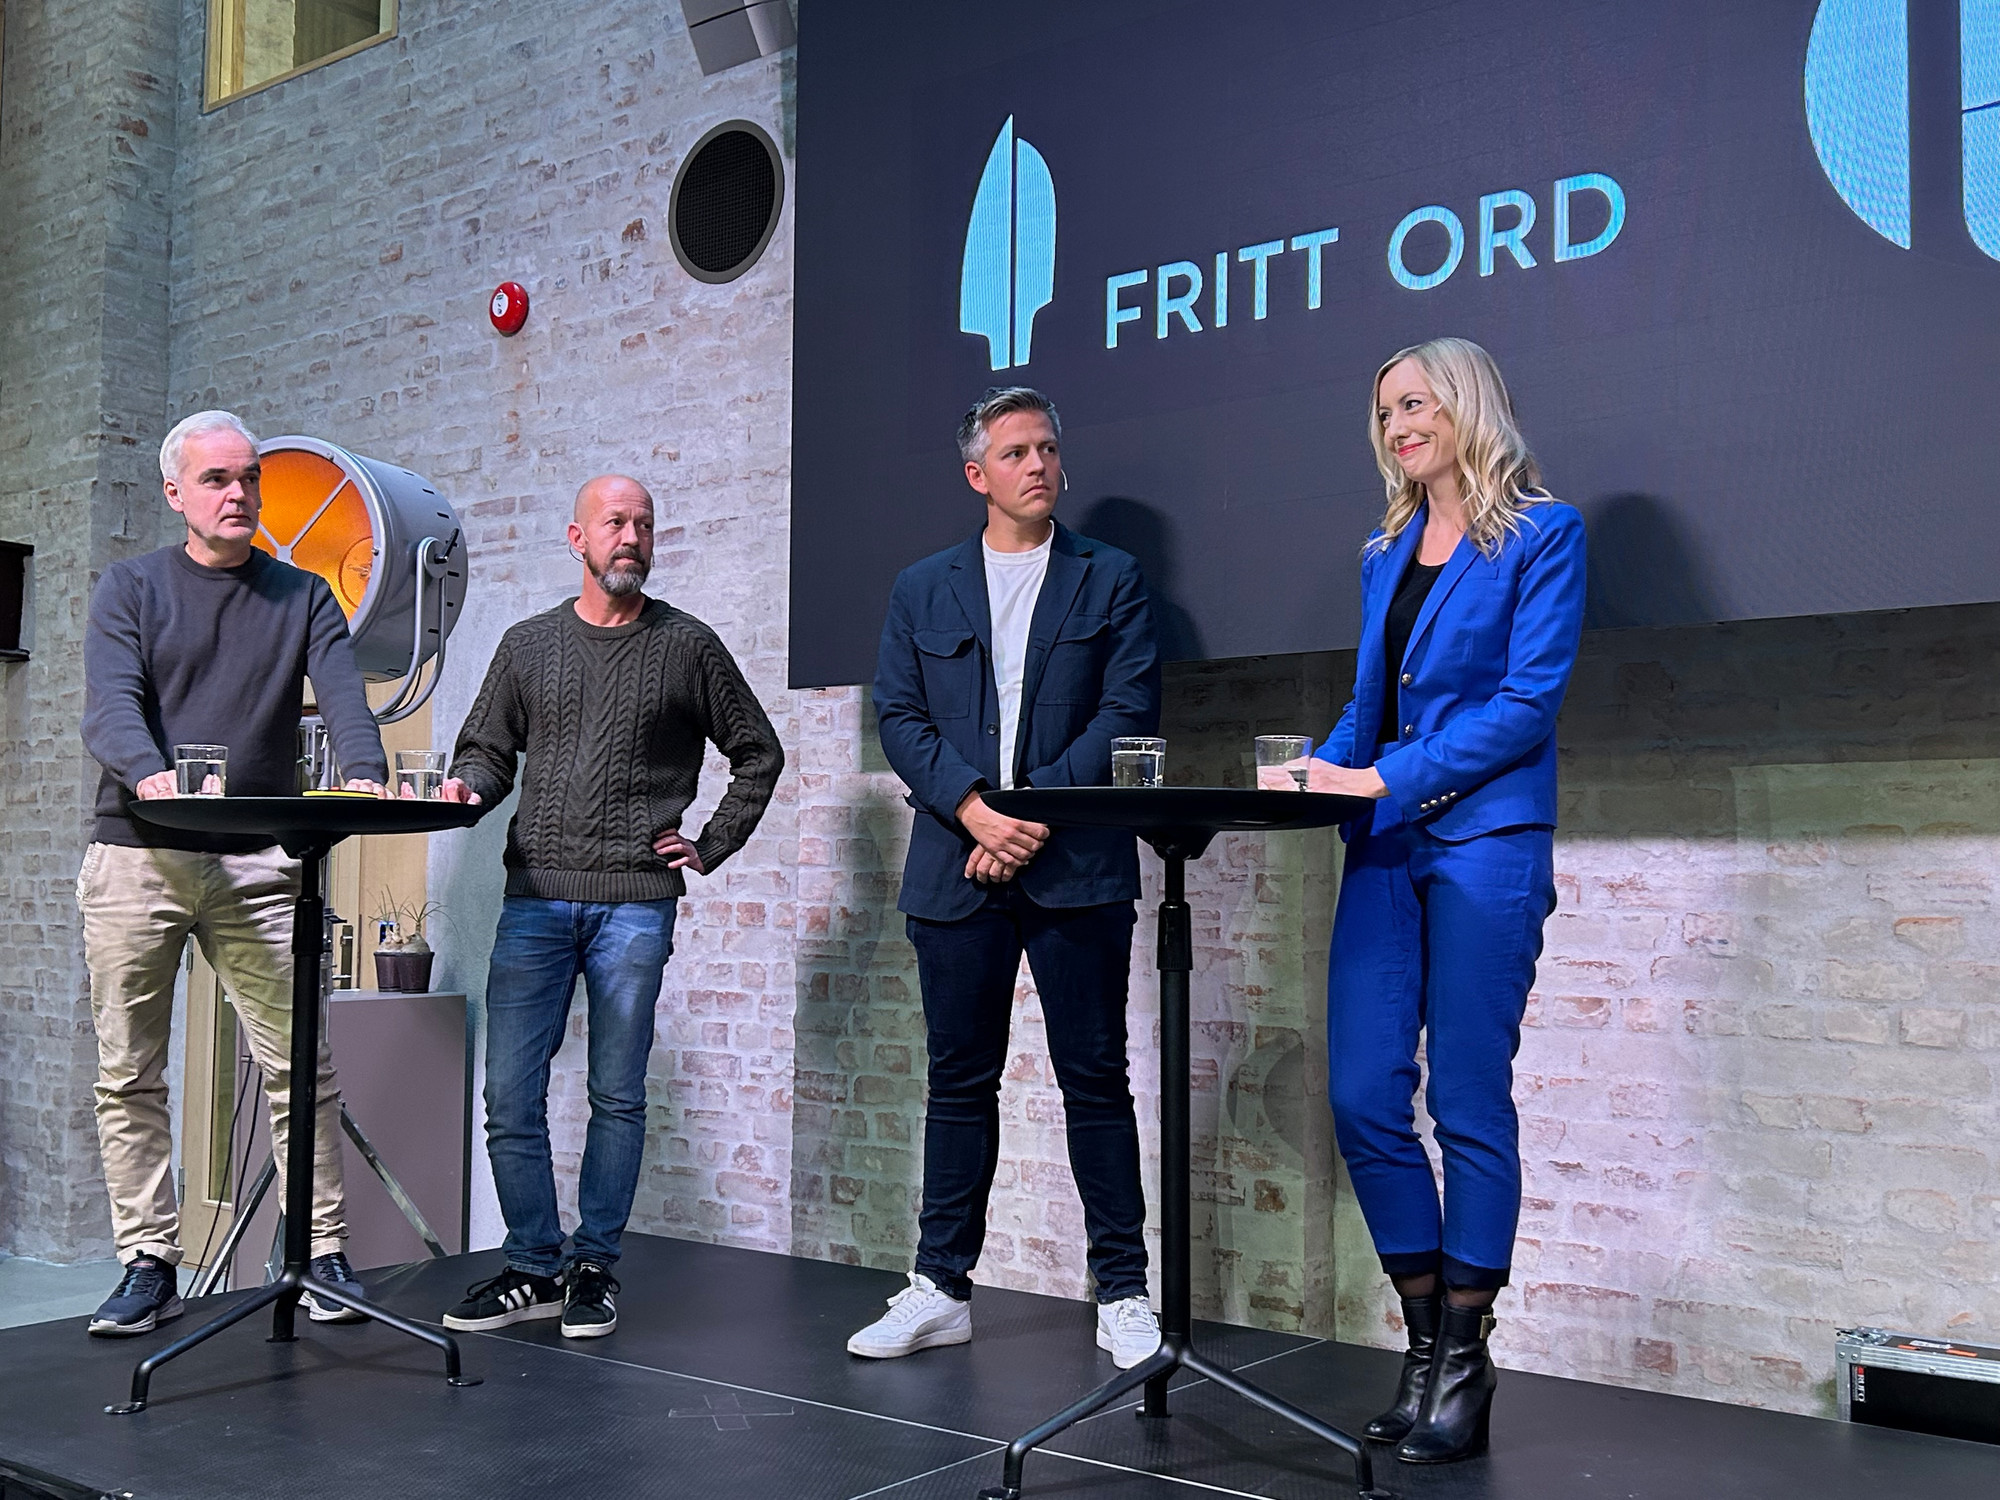 Eivind Ljøstad (Fædrelandsvennen),  Per Arne Kalbakk (NRK), Kelly Lillesund (tidligere Discovery) og Kenneth Fossheim